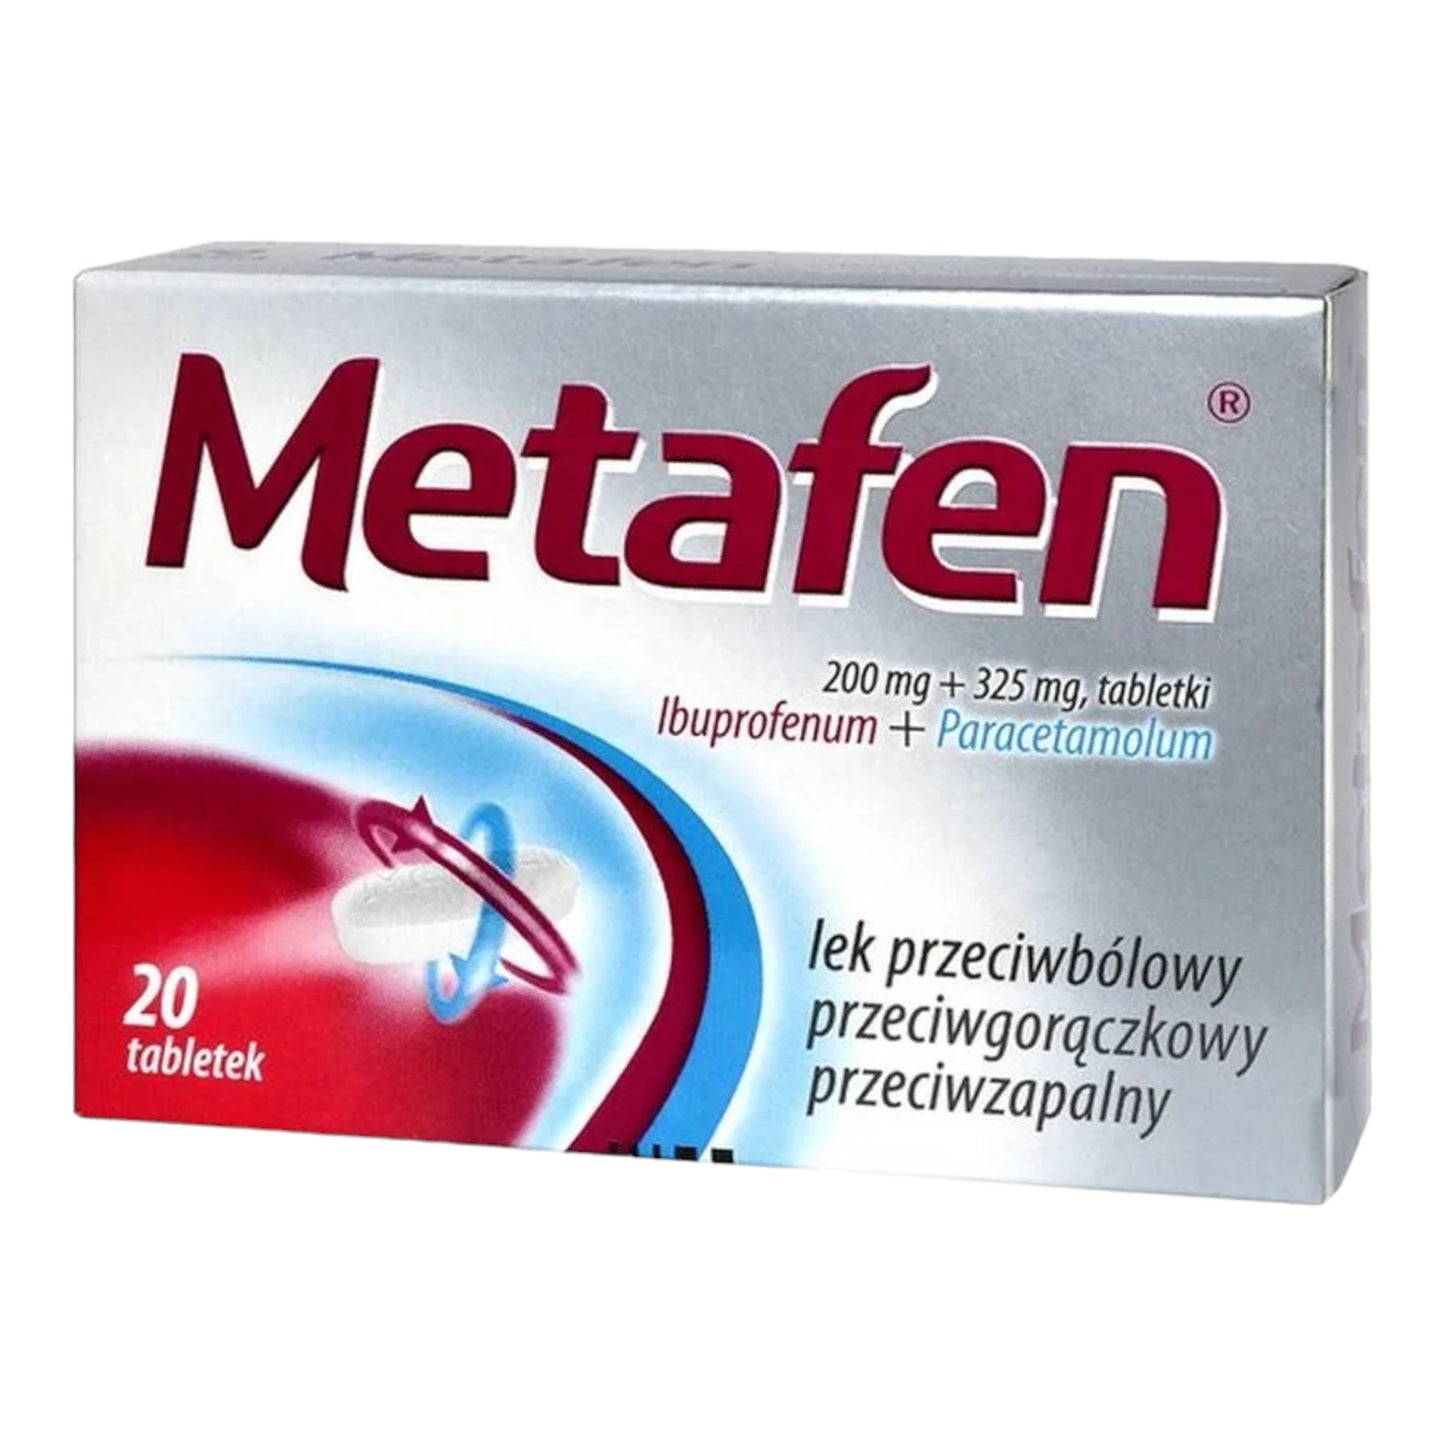 metafen 20 tabletek